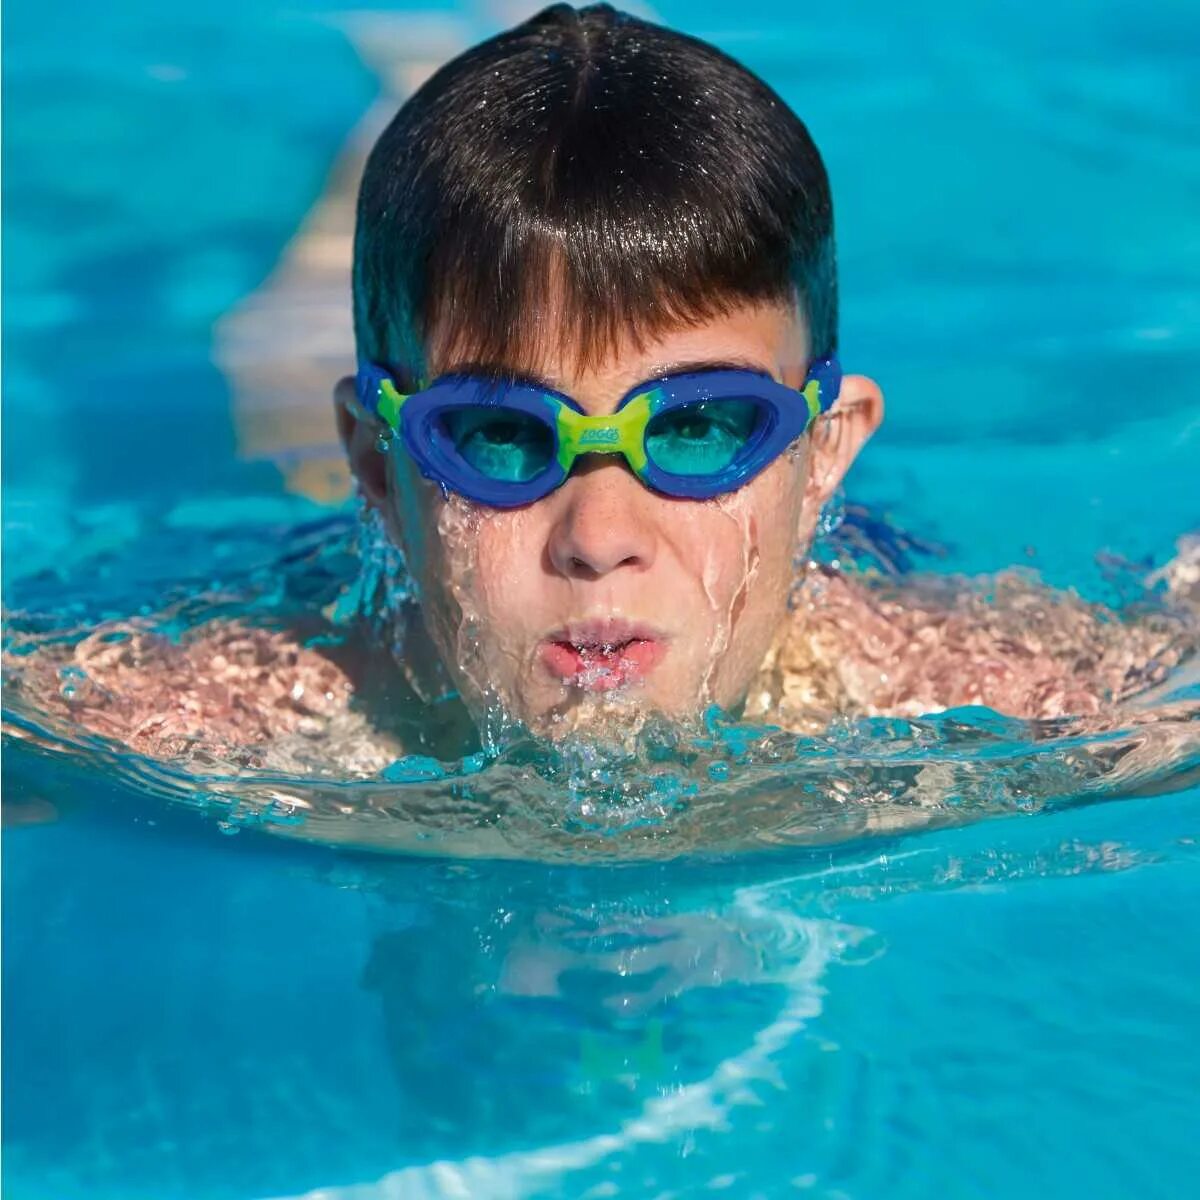 Очки для плавания в бассейне. В очках для плавания. Пловец в очках для плавания. Очки для плавания пловец.